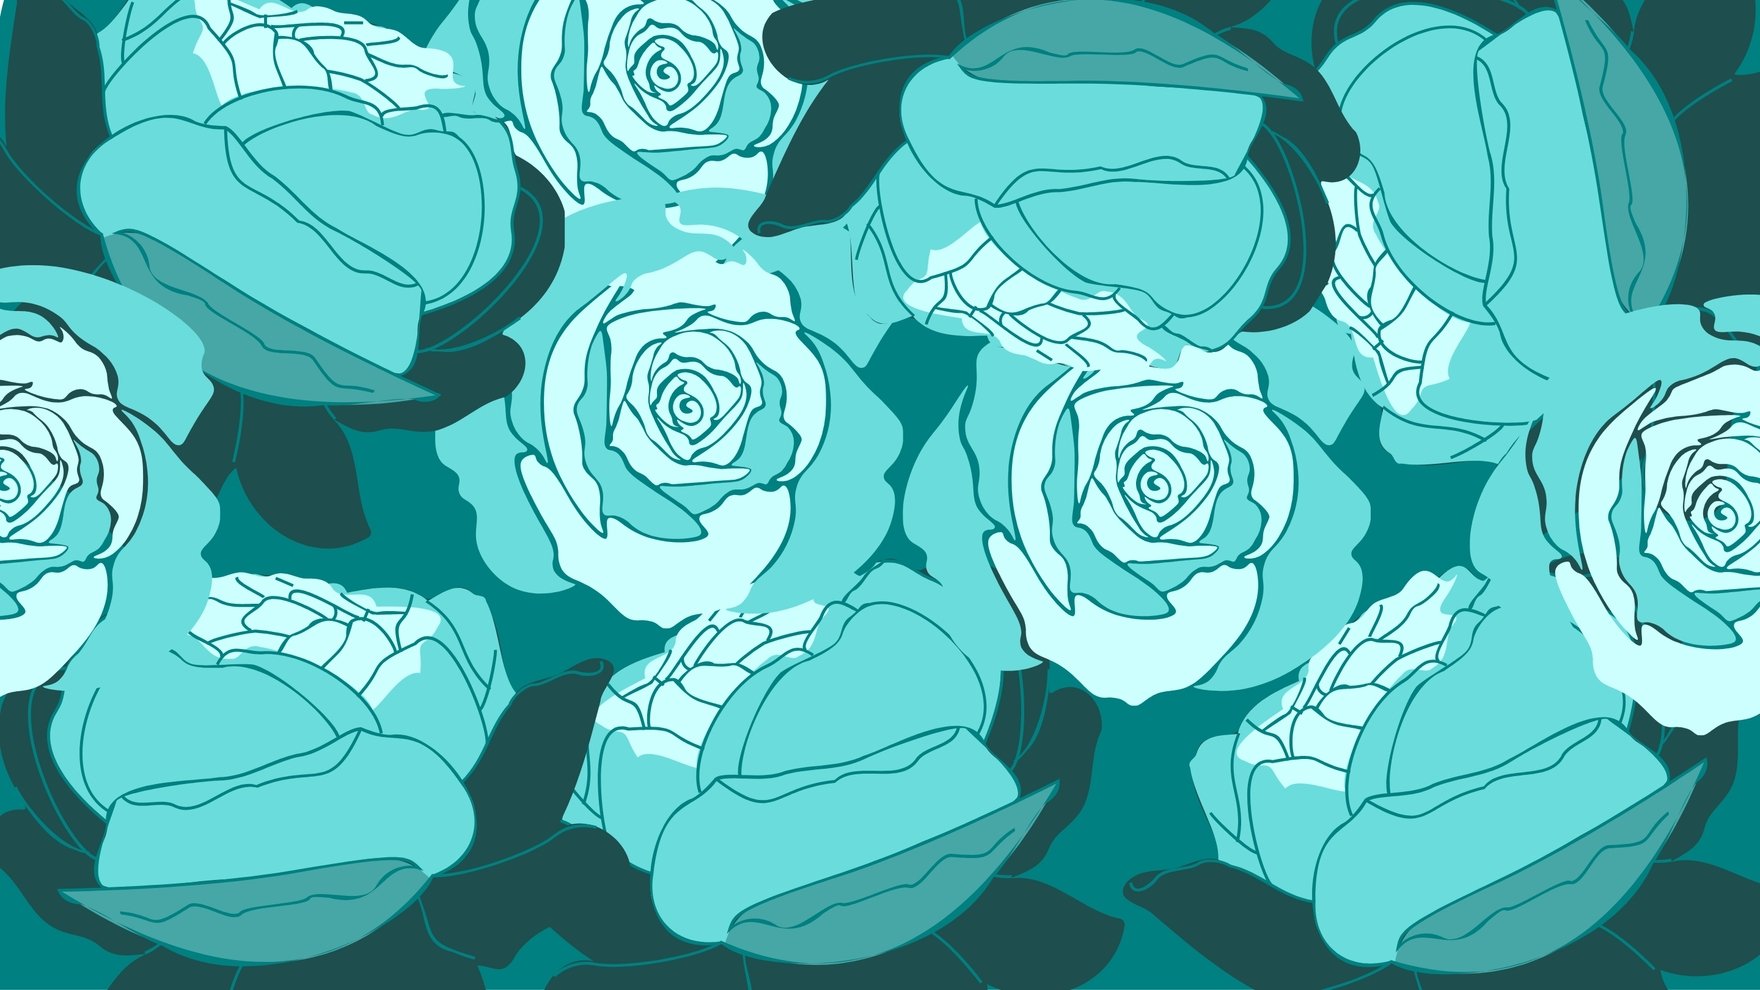 Teal Roses Background in Illustrator, EPS, SVG, JPG, PNG